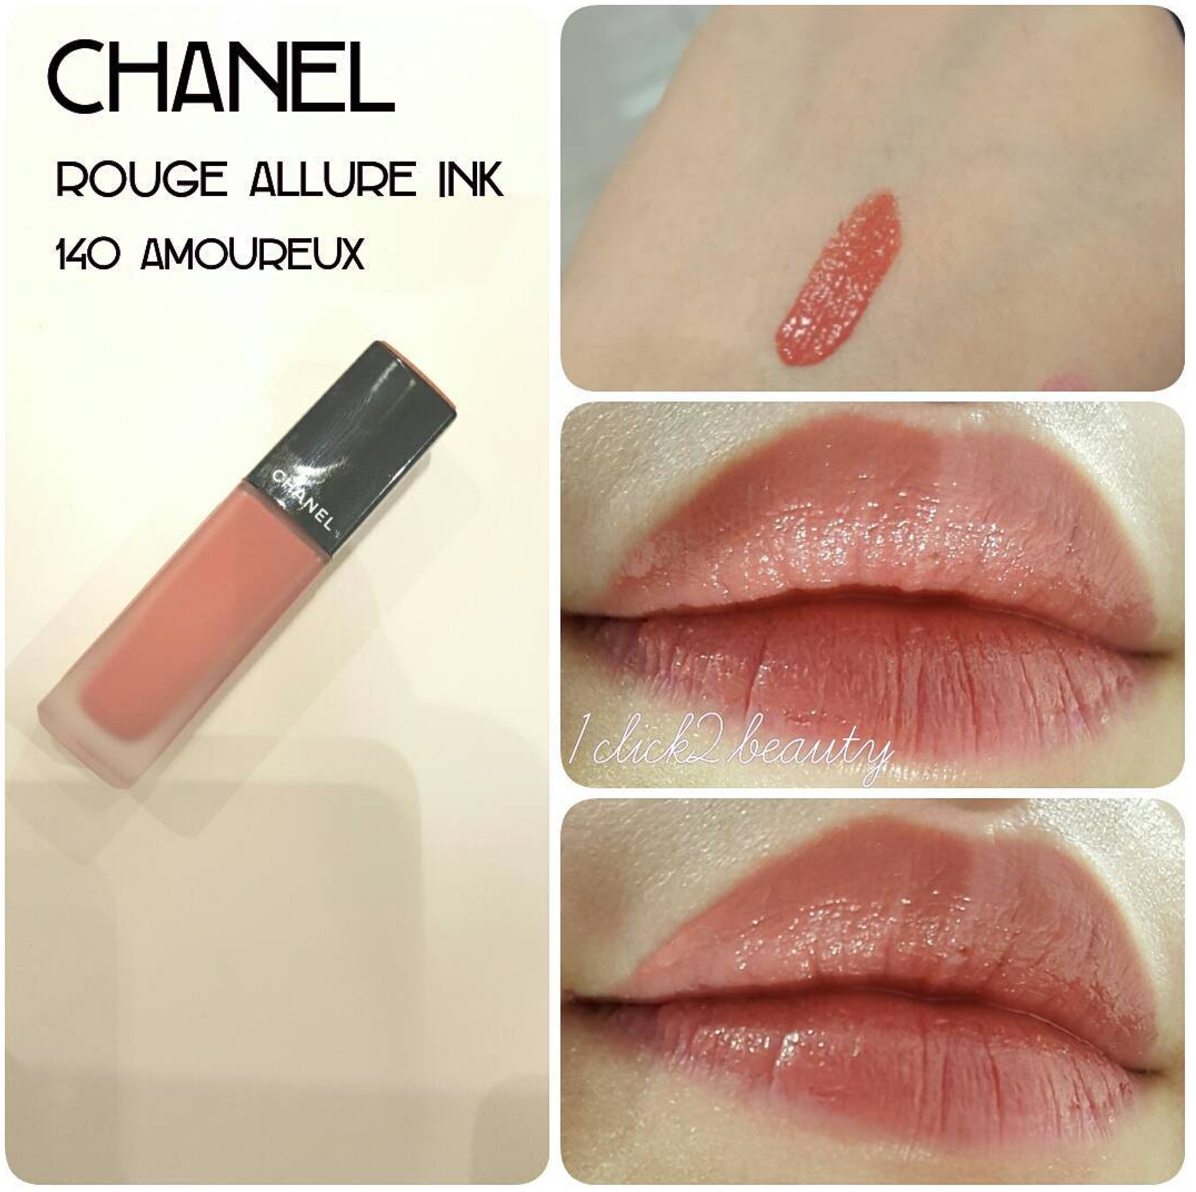 Liebe zum Wort: Chanel ROUGE ALLURE INK #140 amoureux 試色